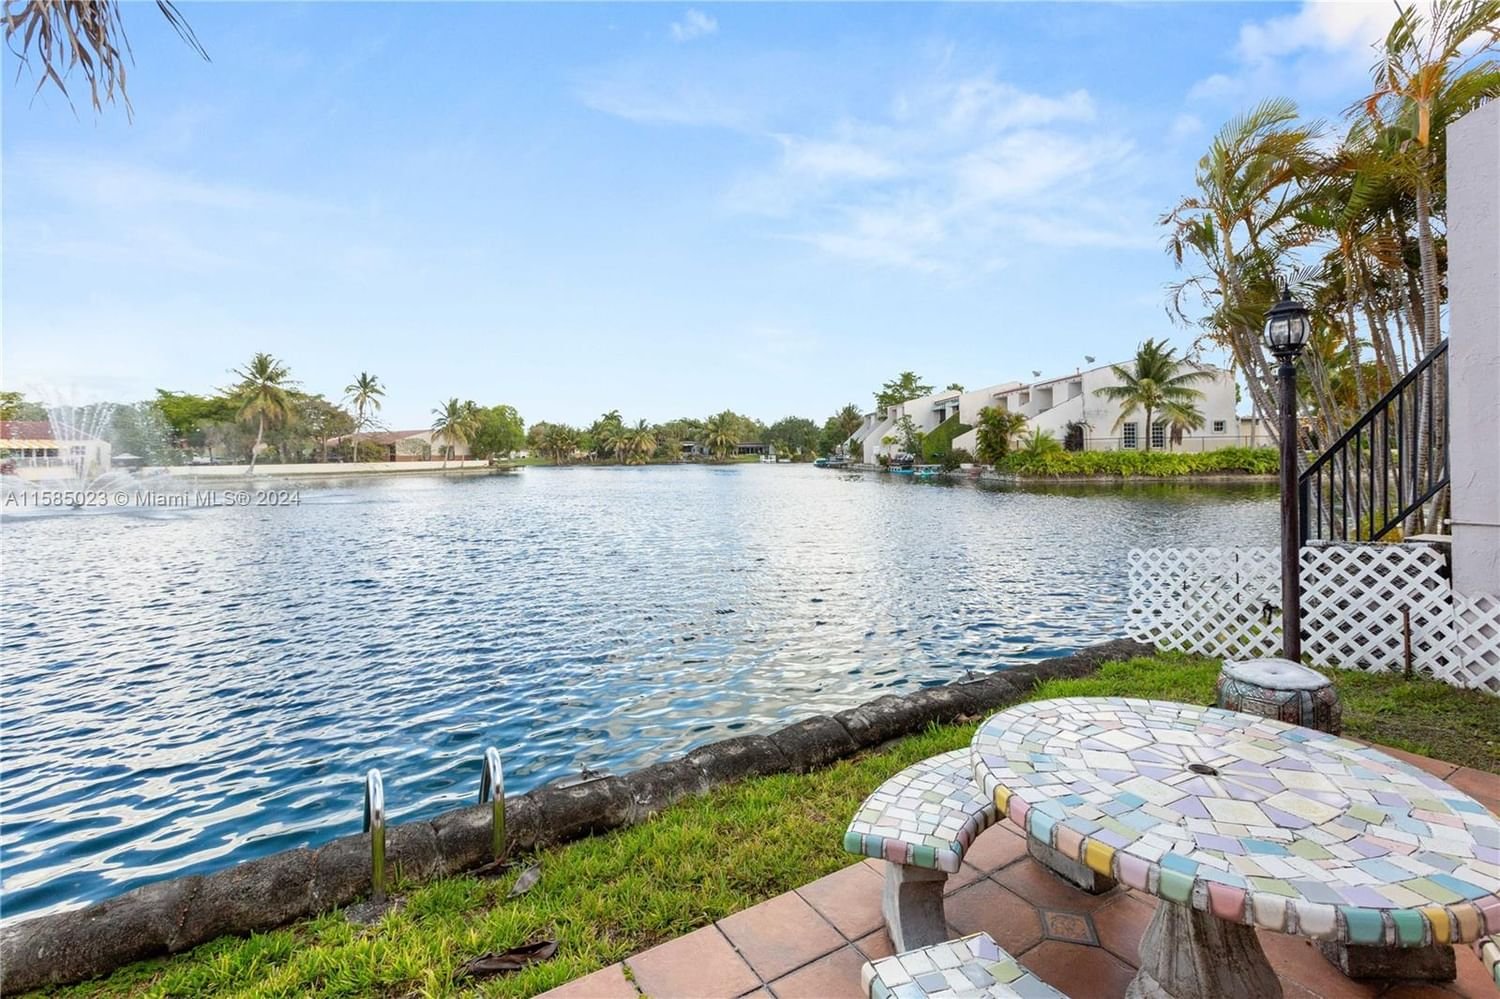 Real estate property located at 7216 Jacaranda Ln, Miami-Dade County, MIAMI LAKES LAKE MARTHA S, Miami Lakes, FL